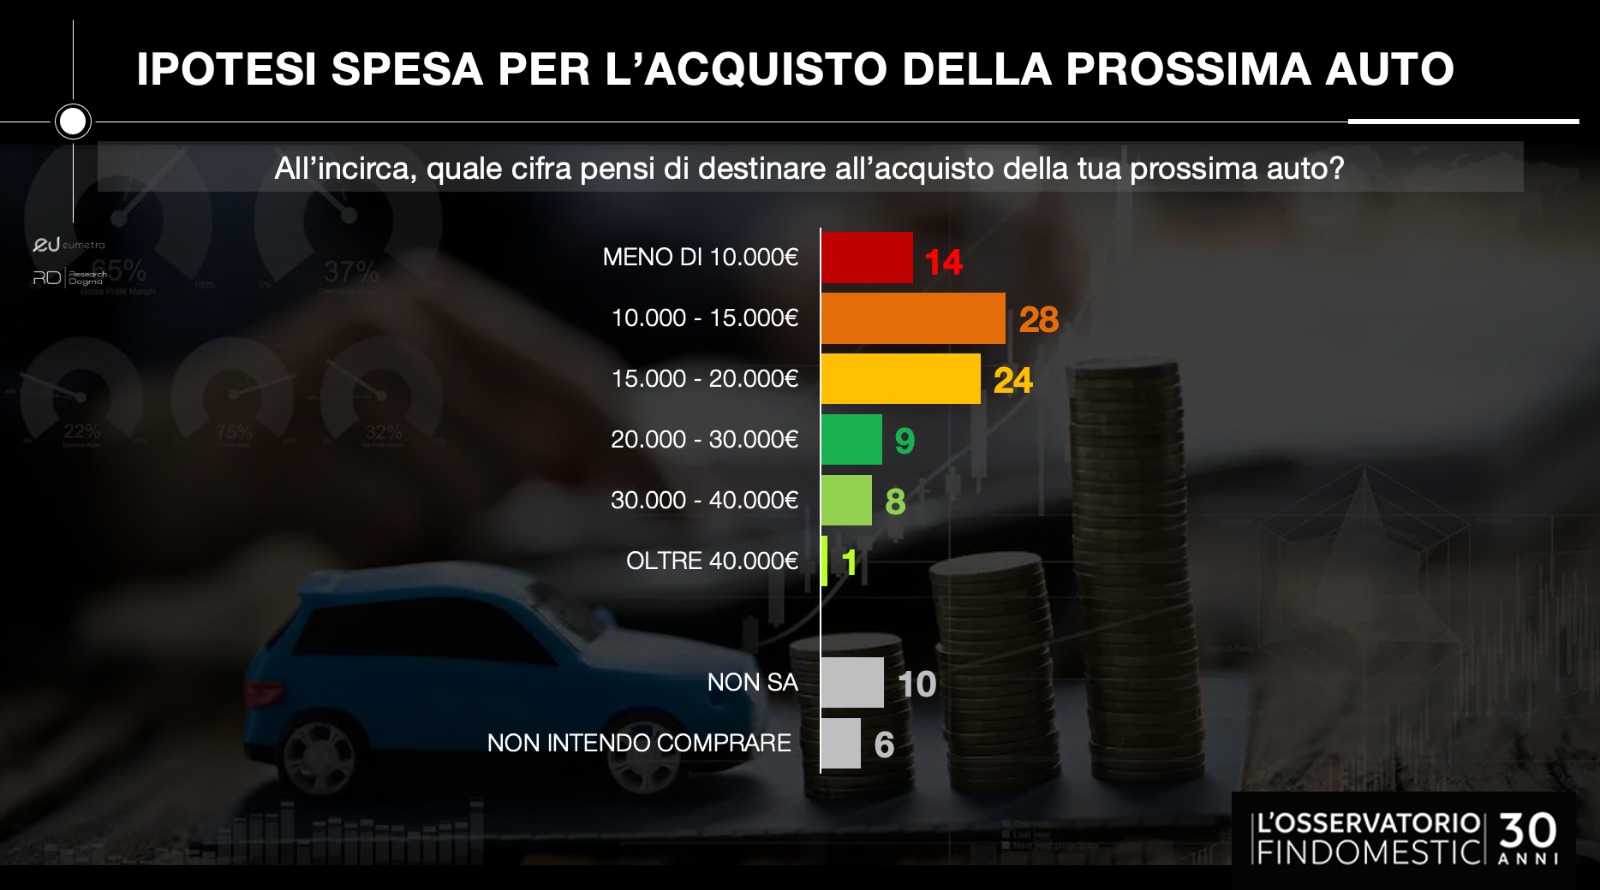 Osservatorio Findomestic ed il mercato delle auto in Italia